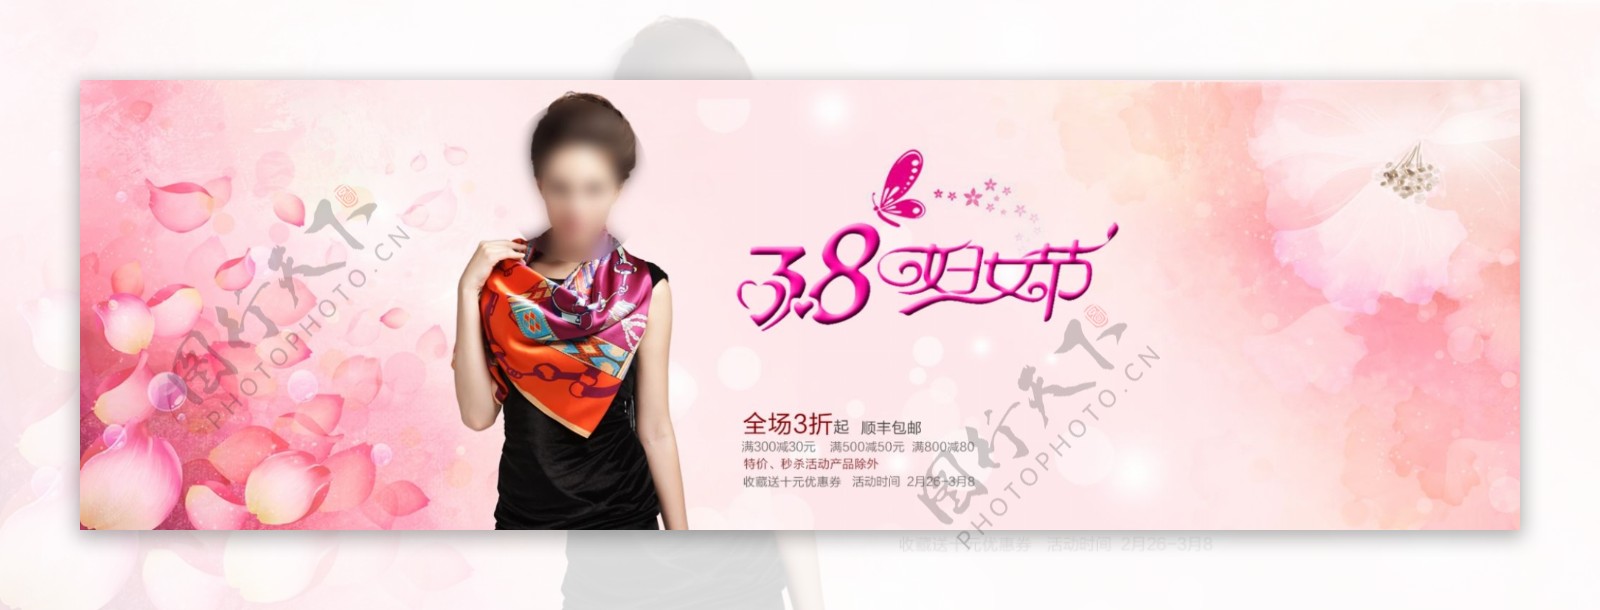 淘宝丝巾节日促销海报设计PSD素材